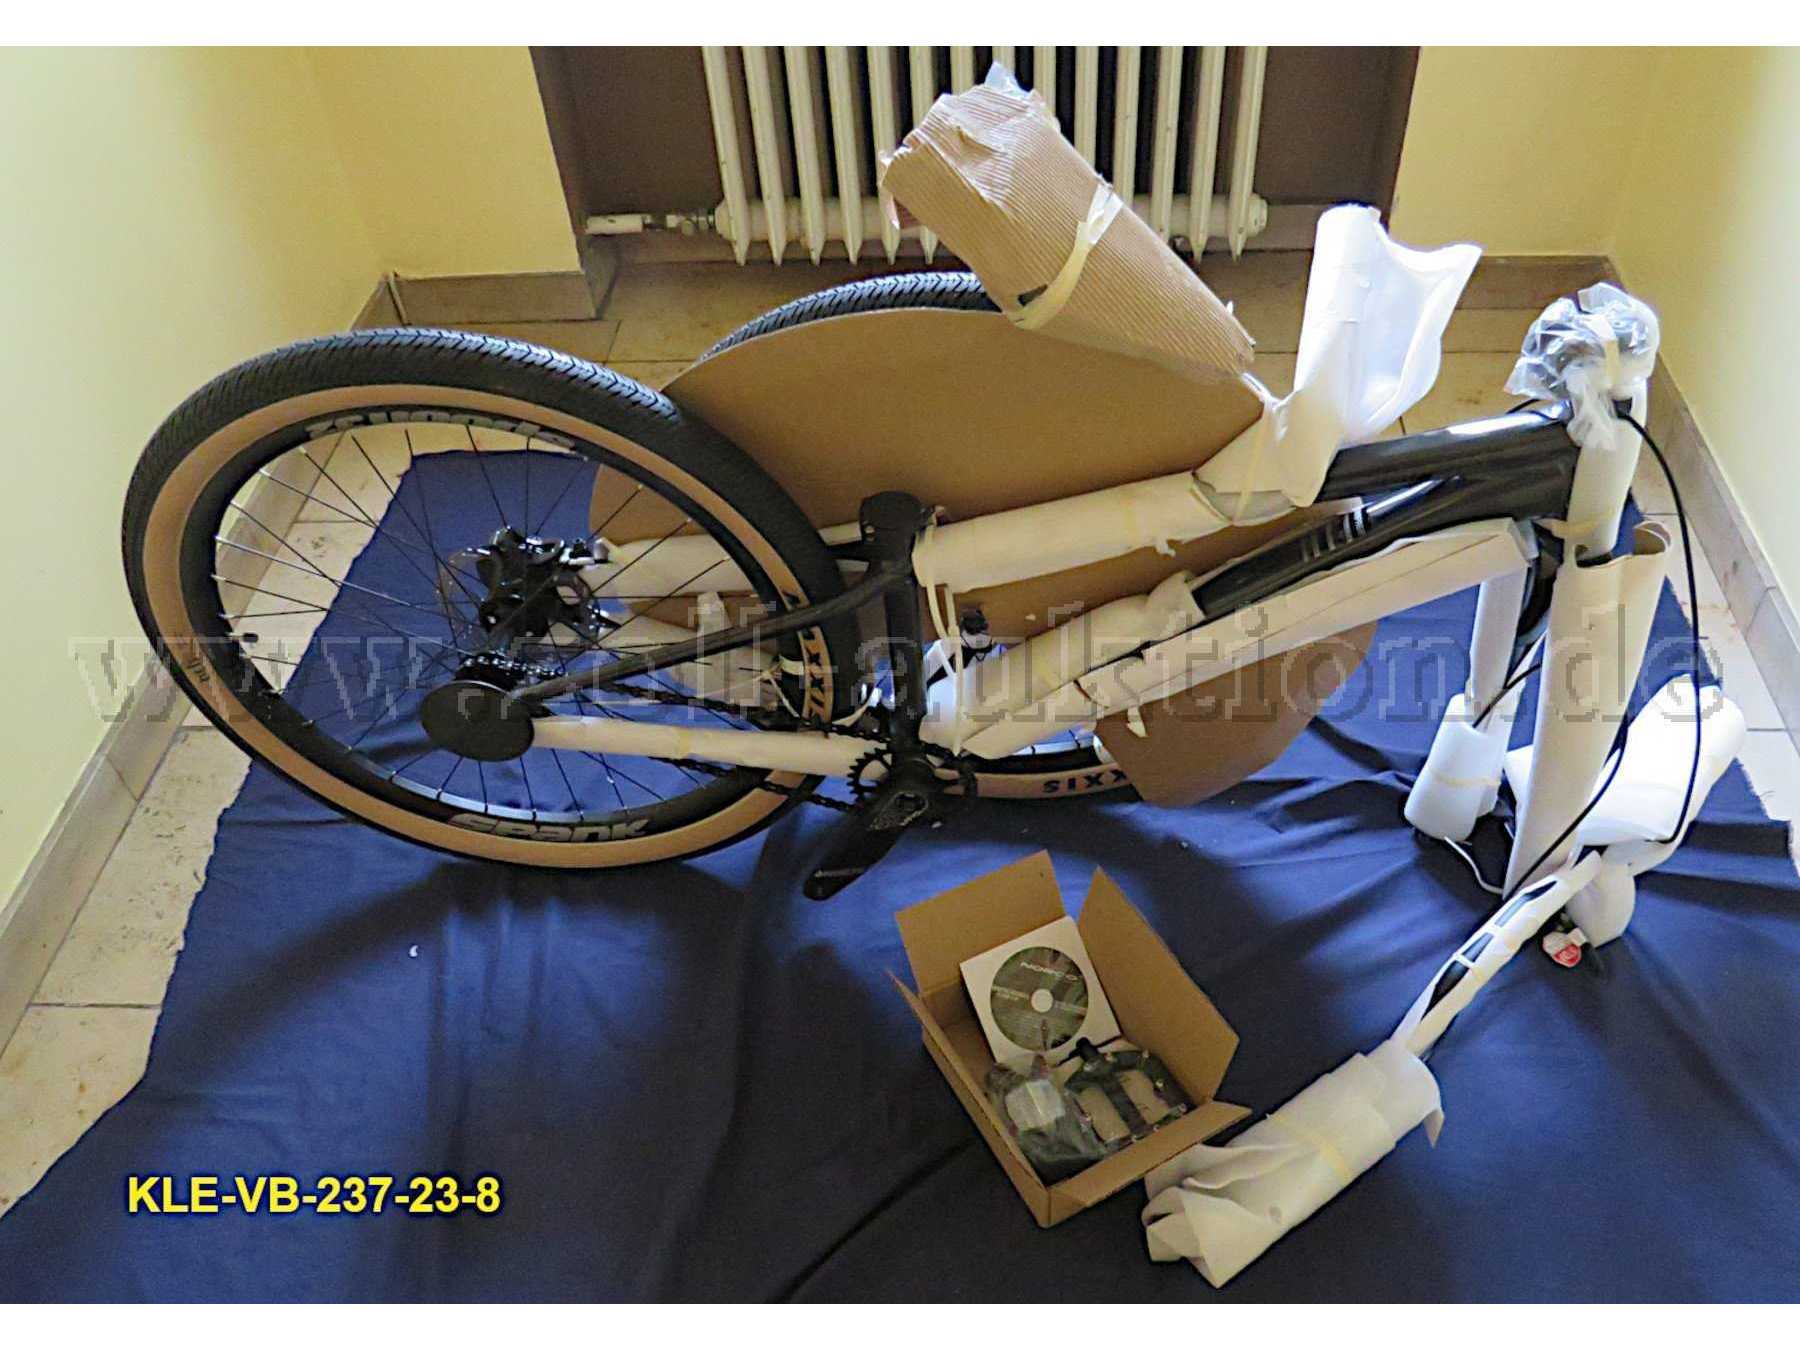 Fahrrad verpackt